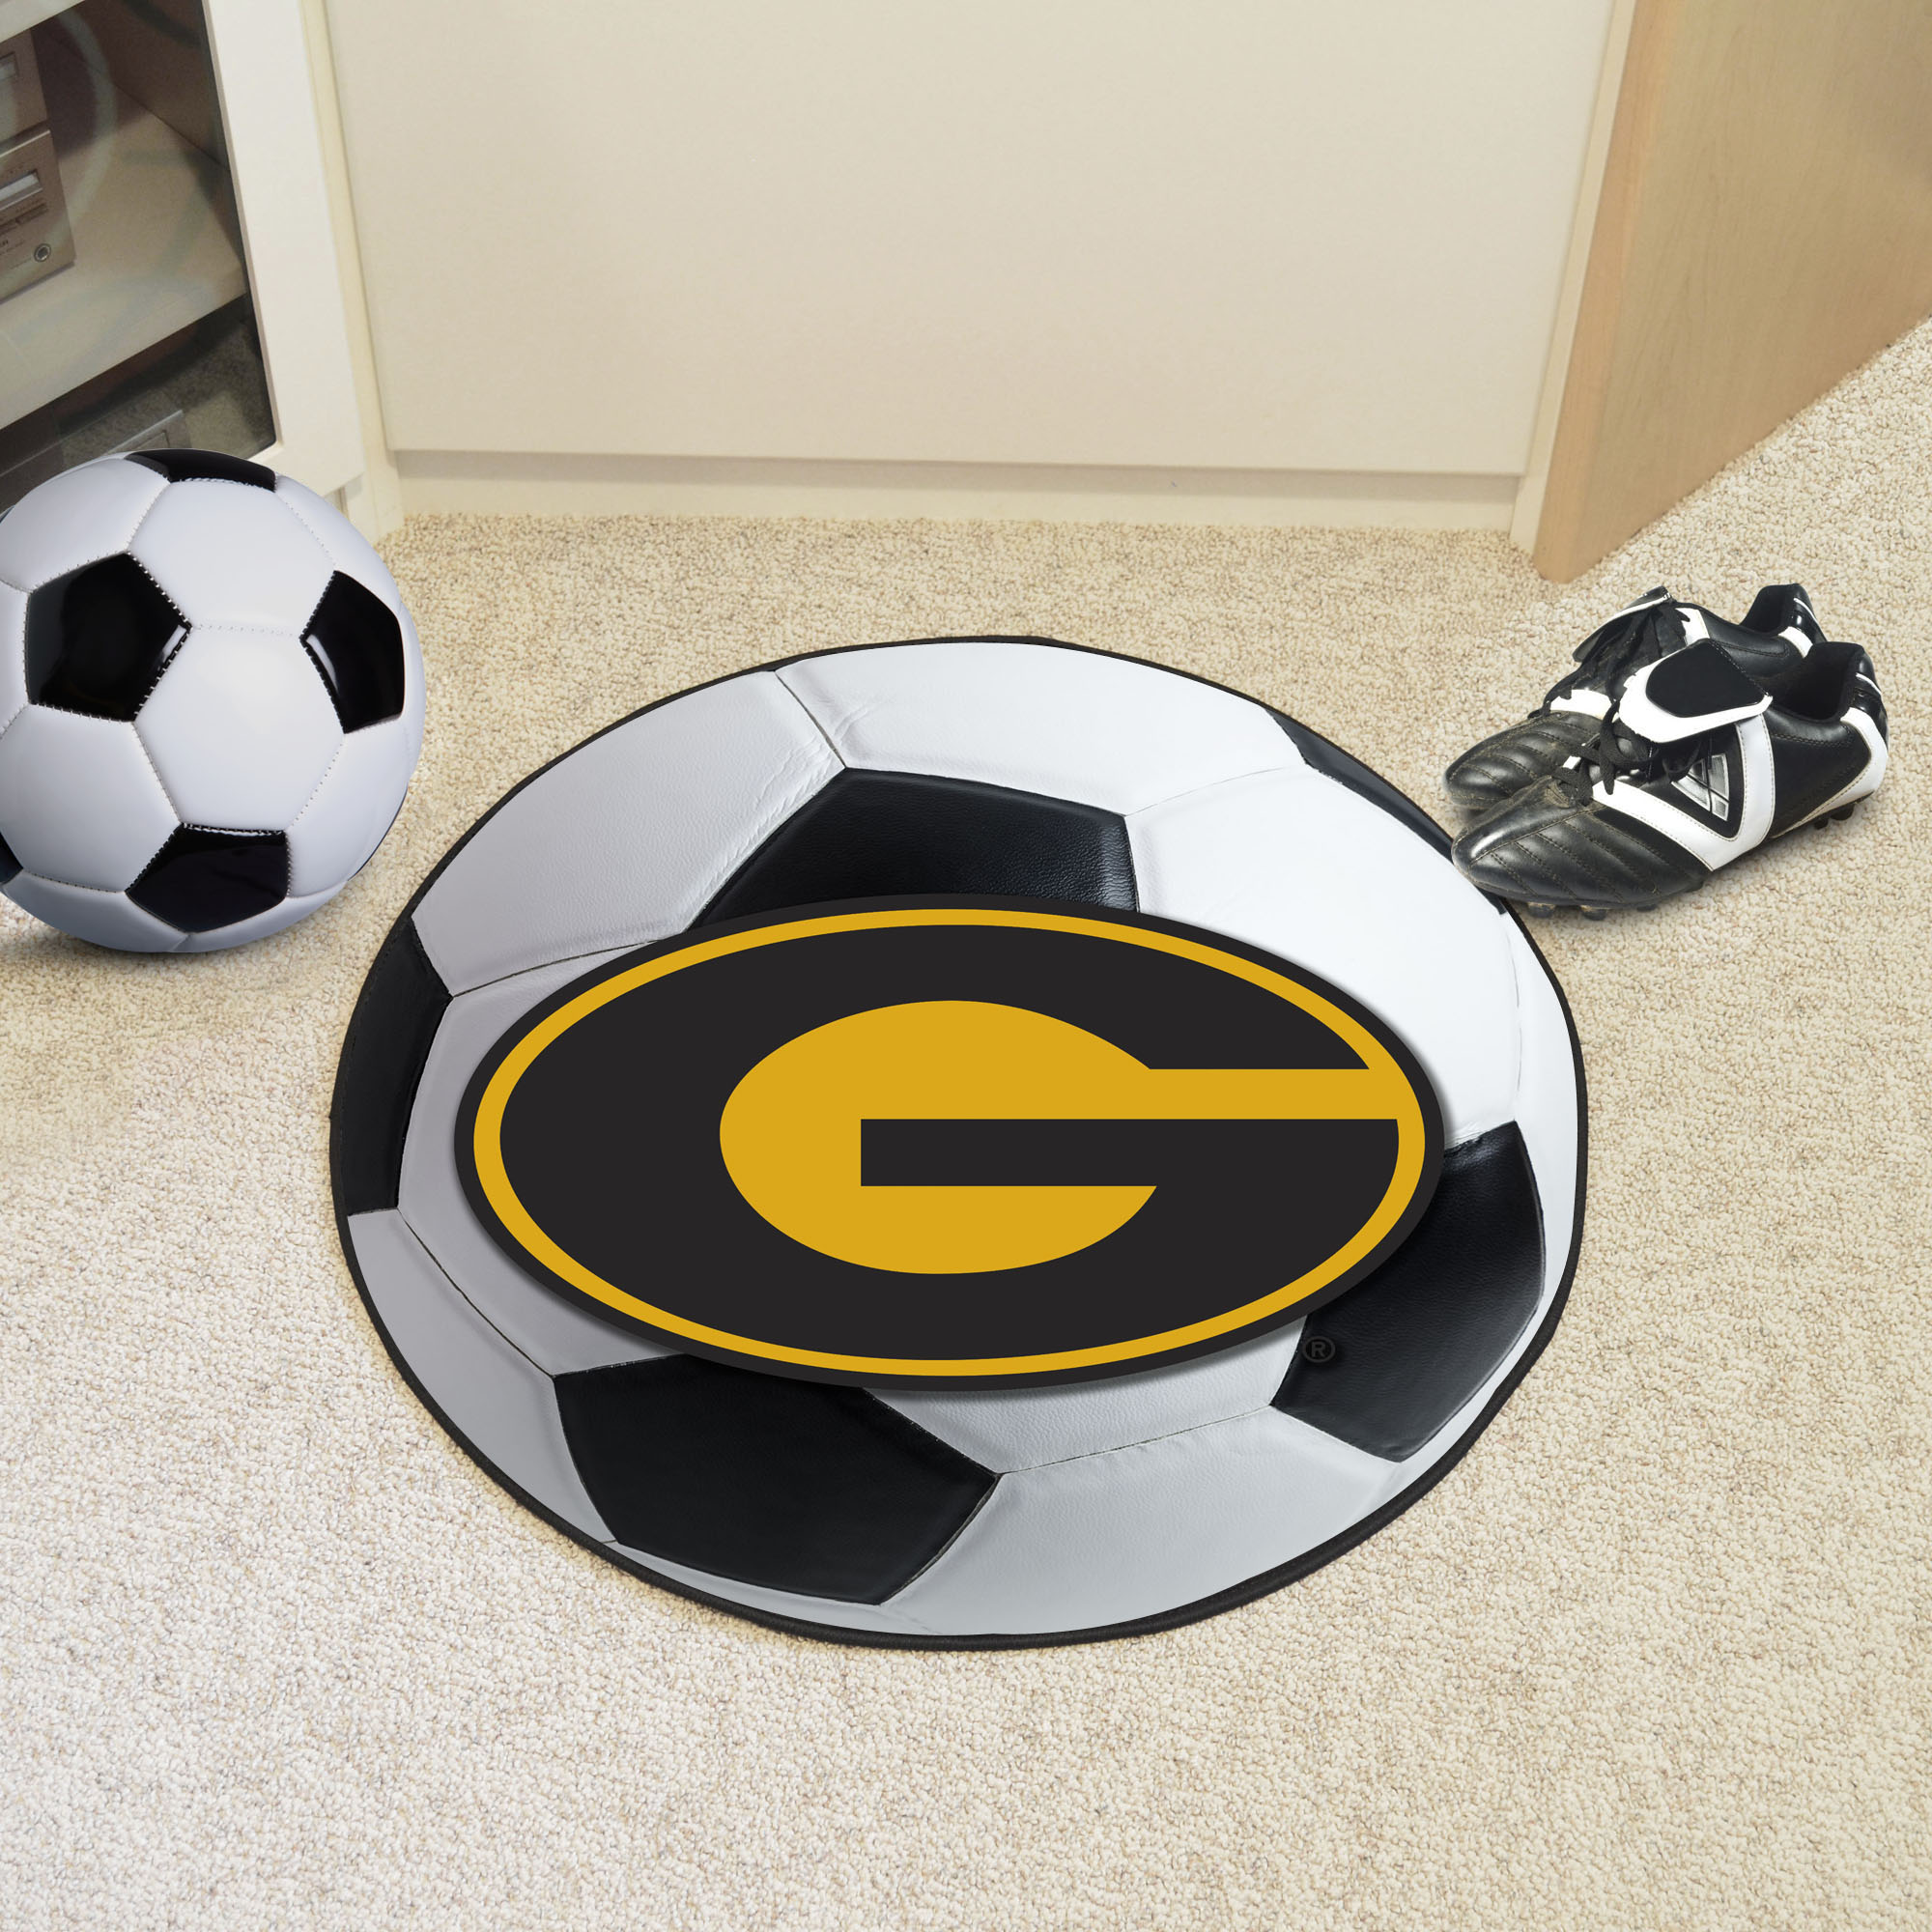 Grambling State University Ball Shaped Area rugs (Ball Shaped Area Rugs: Soccer Ball)